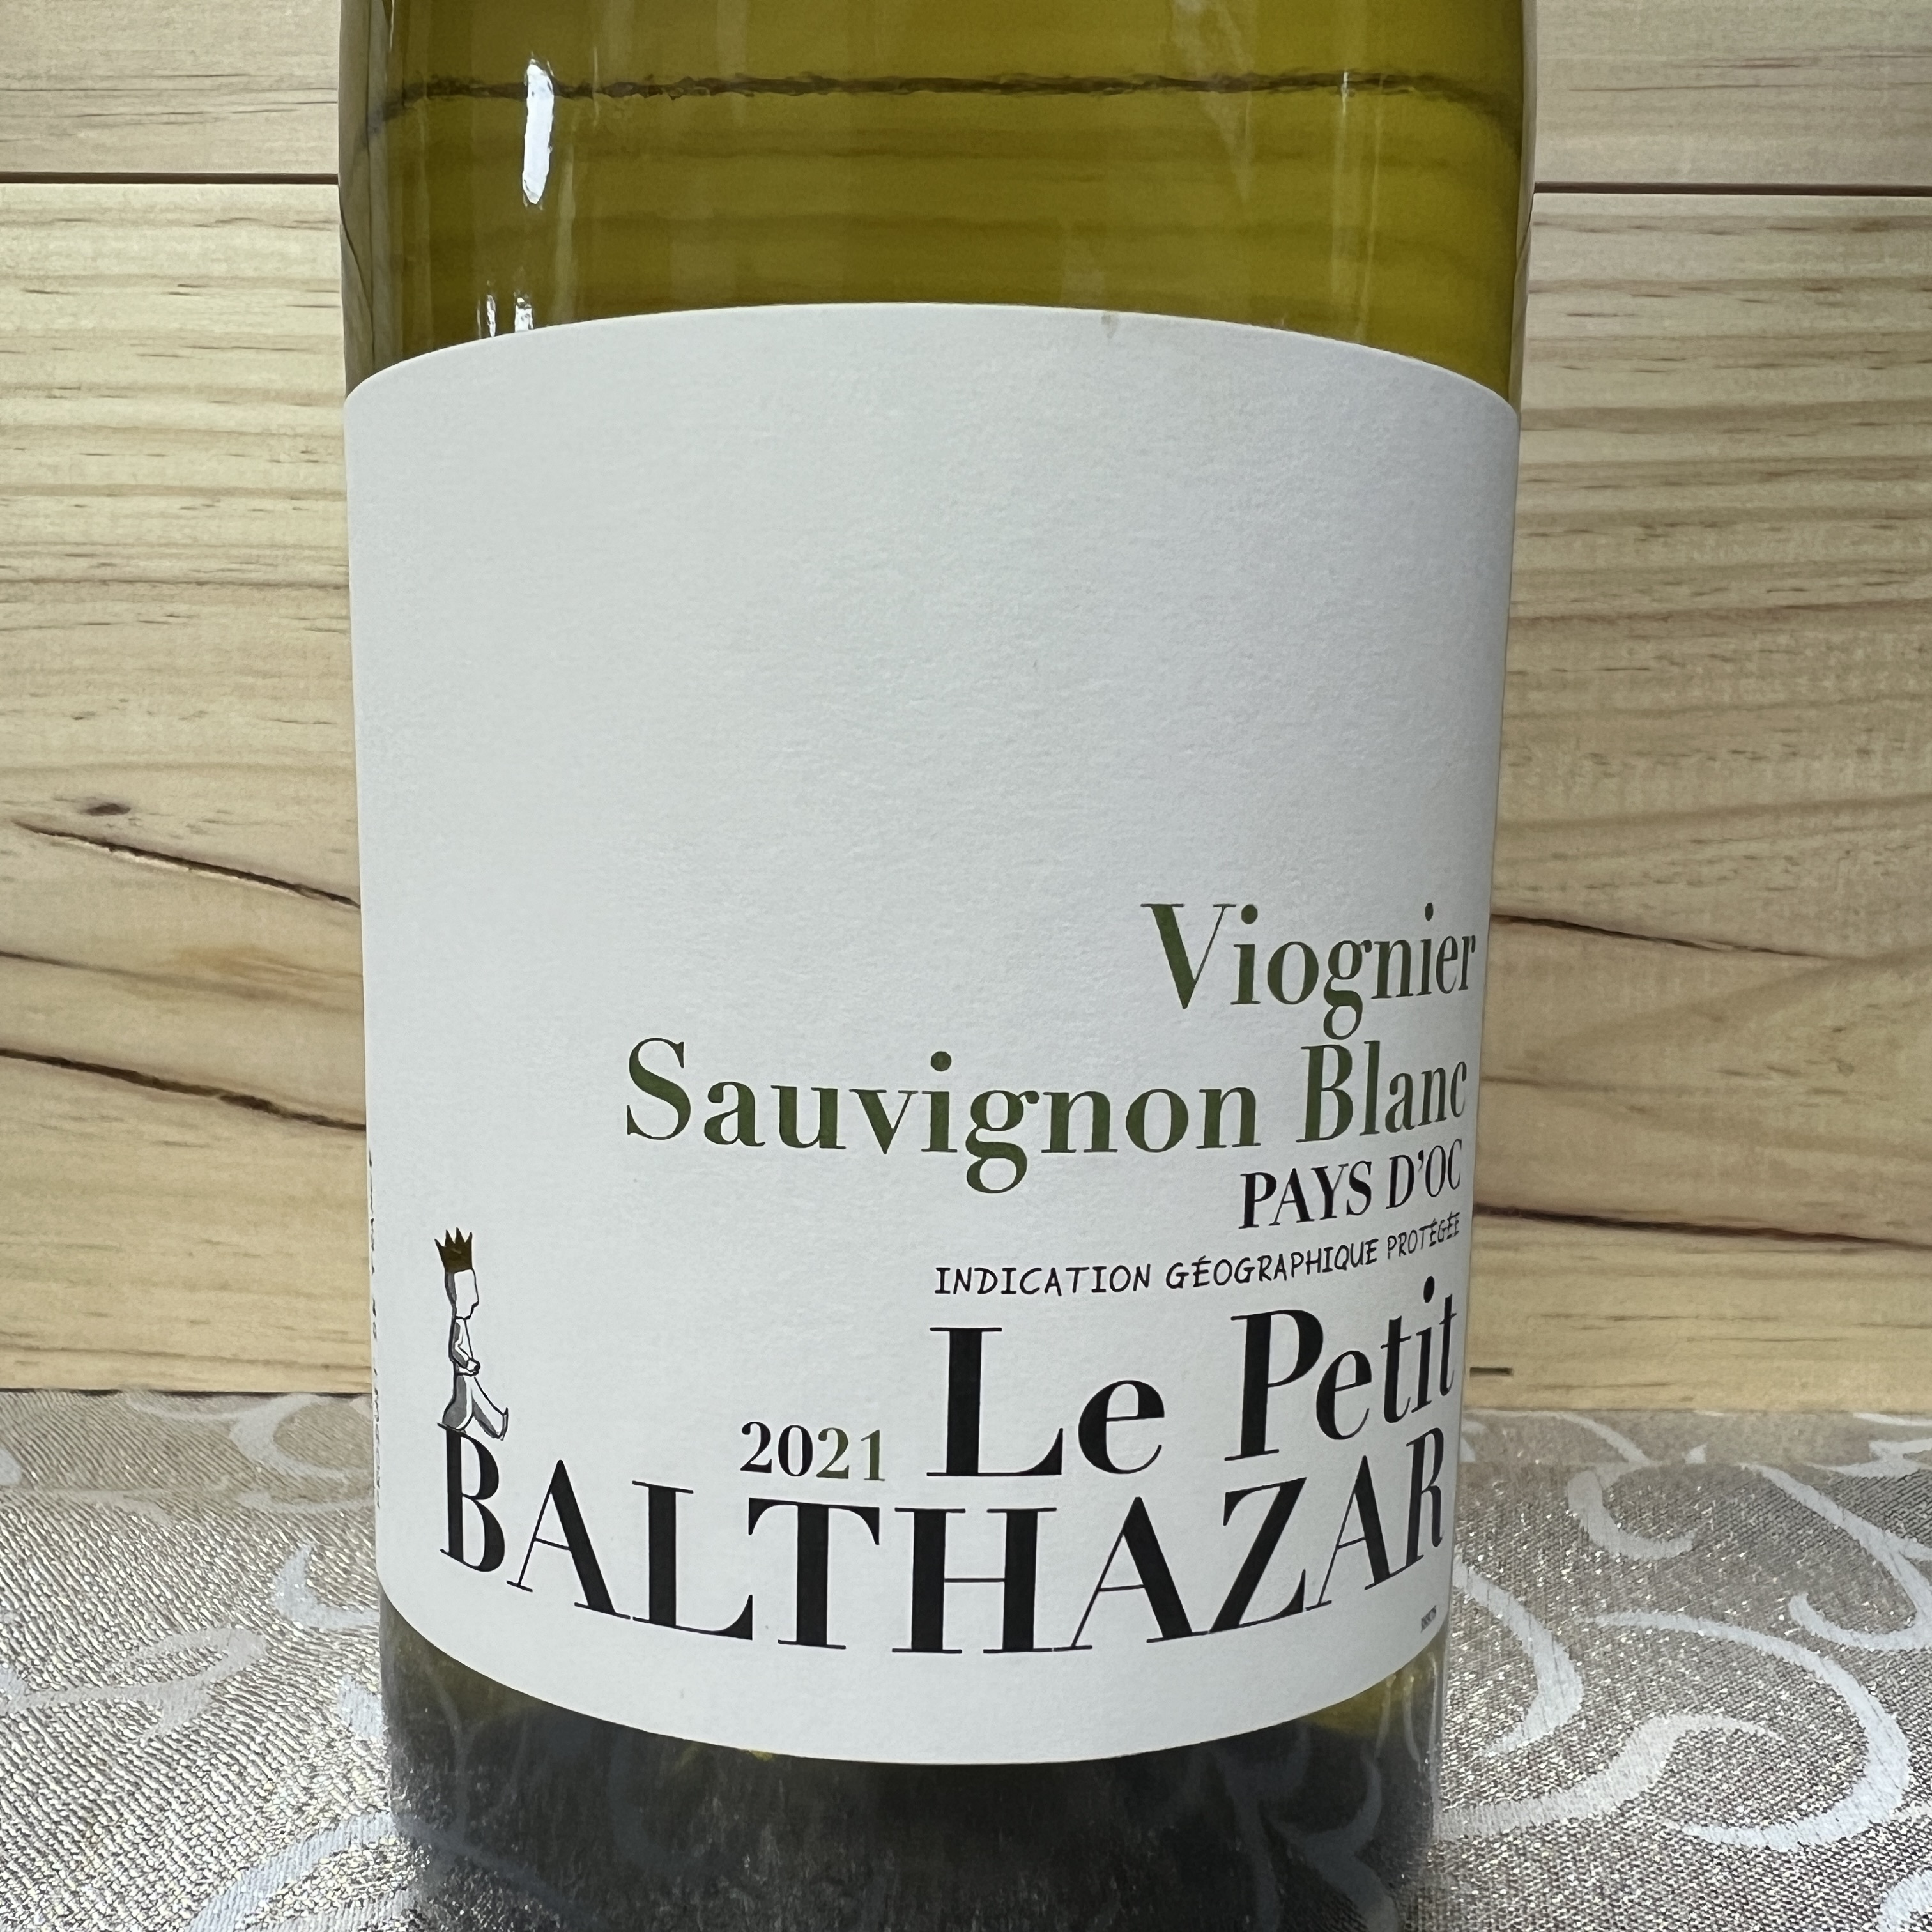 Le Petit Balthazar Sauvignon Blanc/Viognier pays d'oc 2021